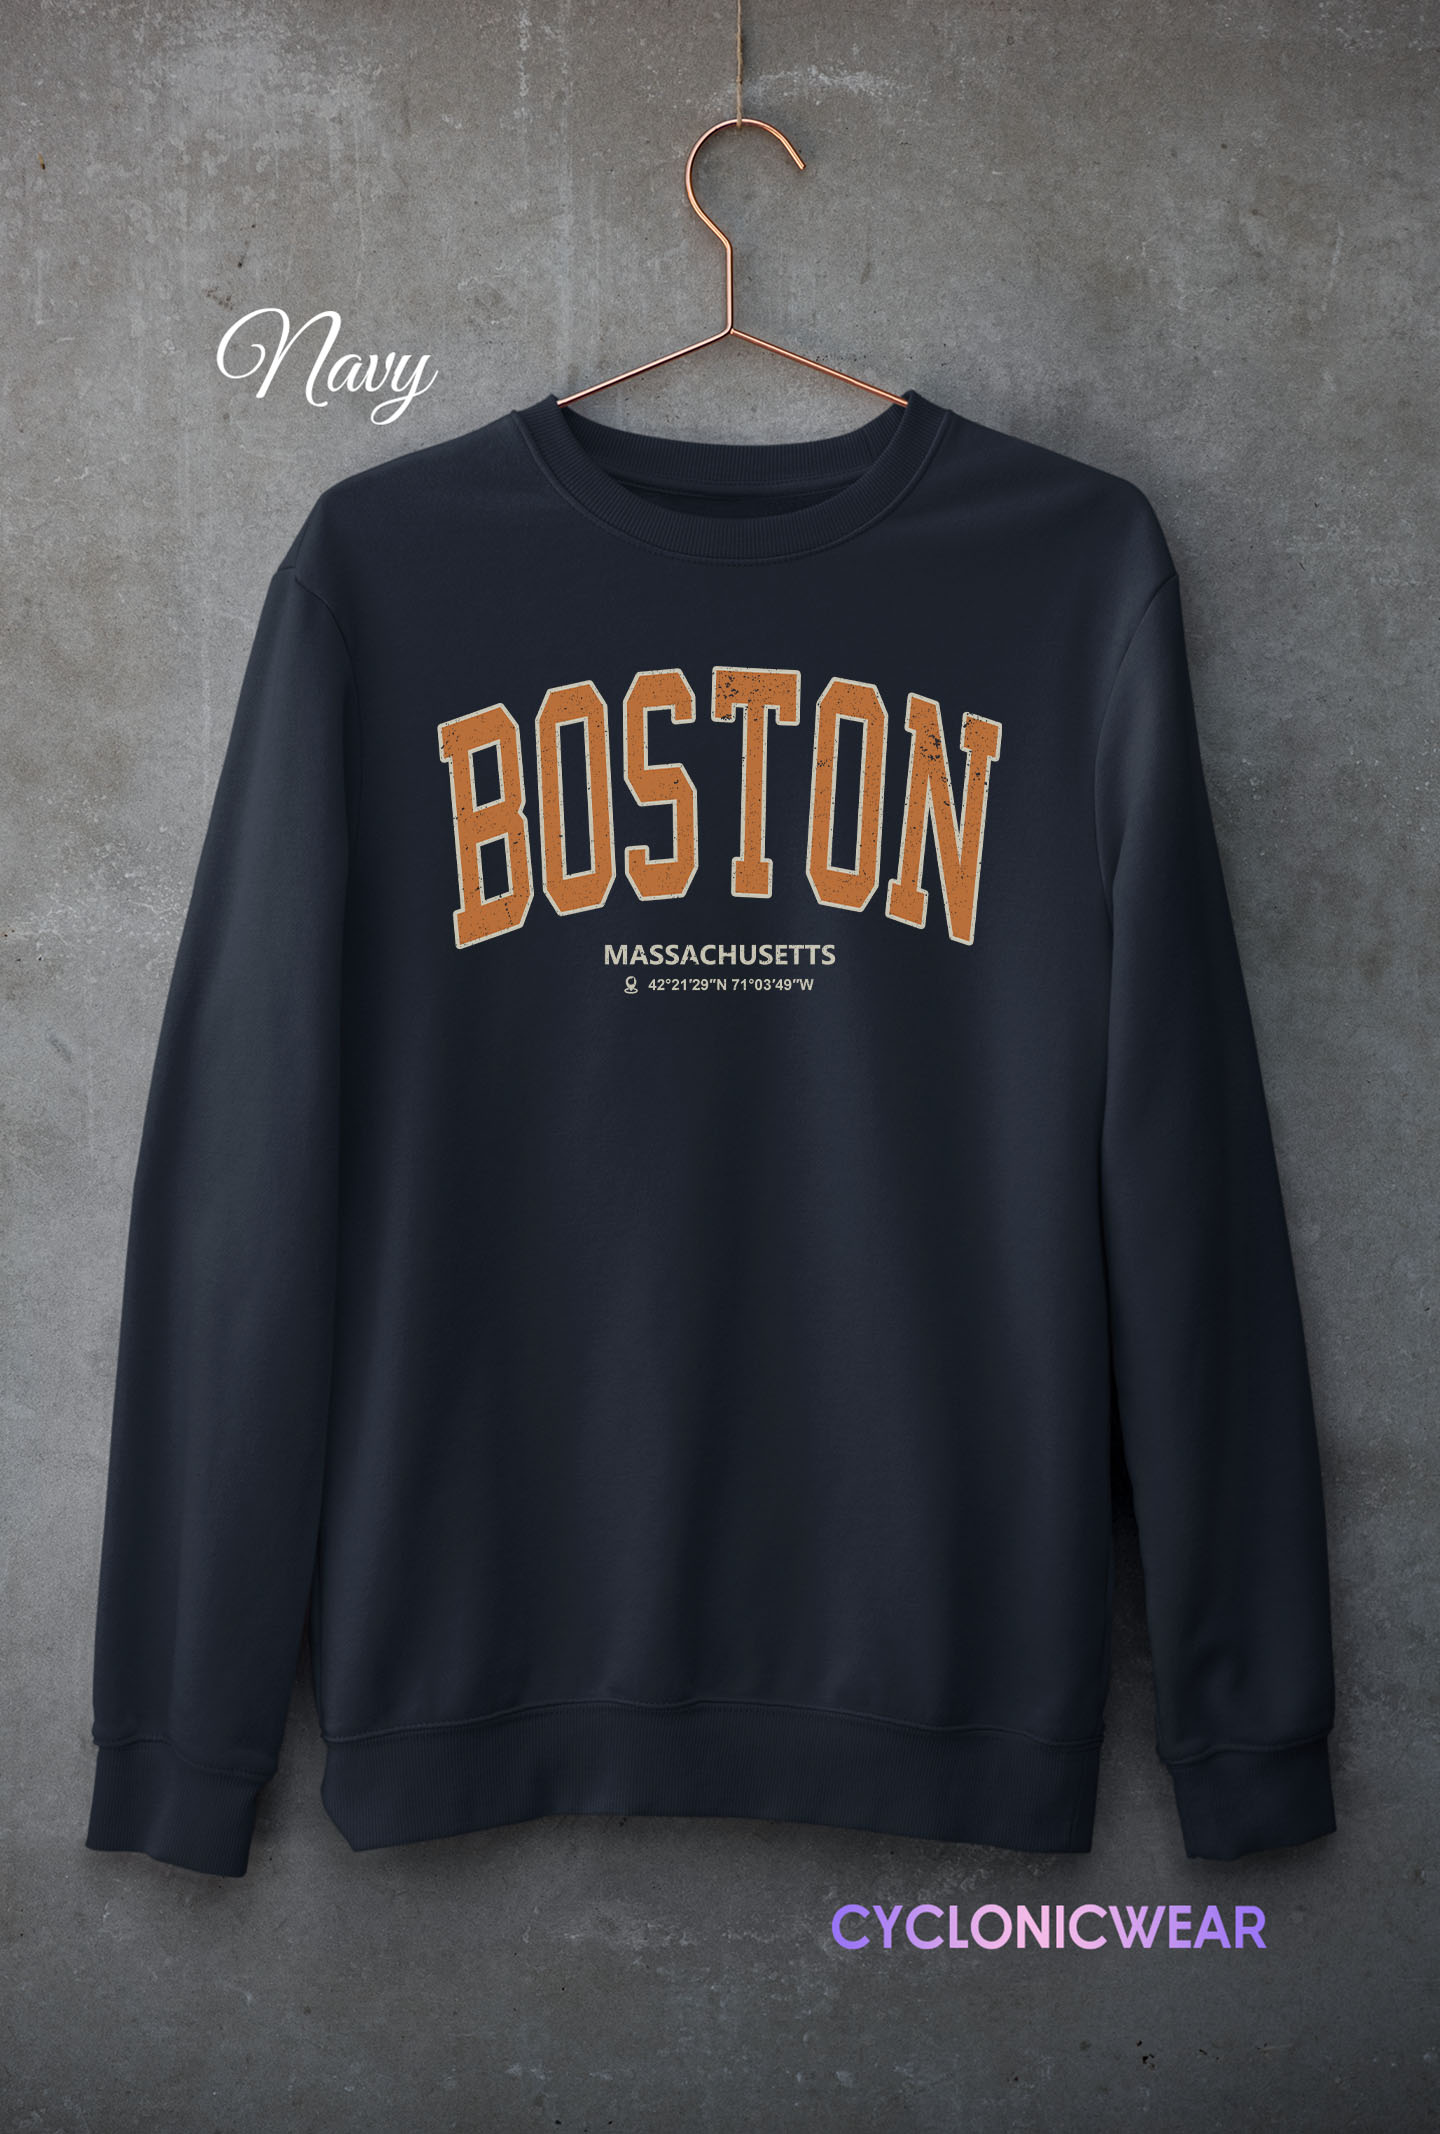 Vintage Style Boston Massachusetts Sweatshirt